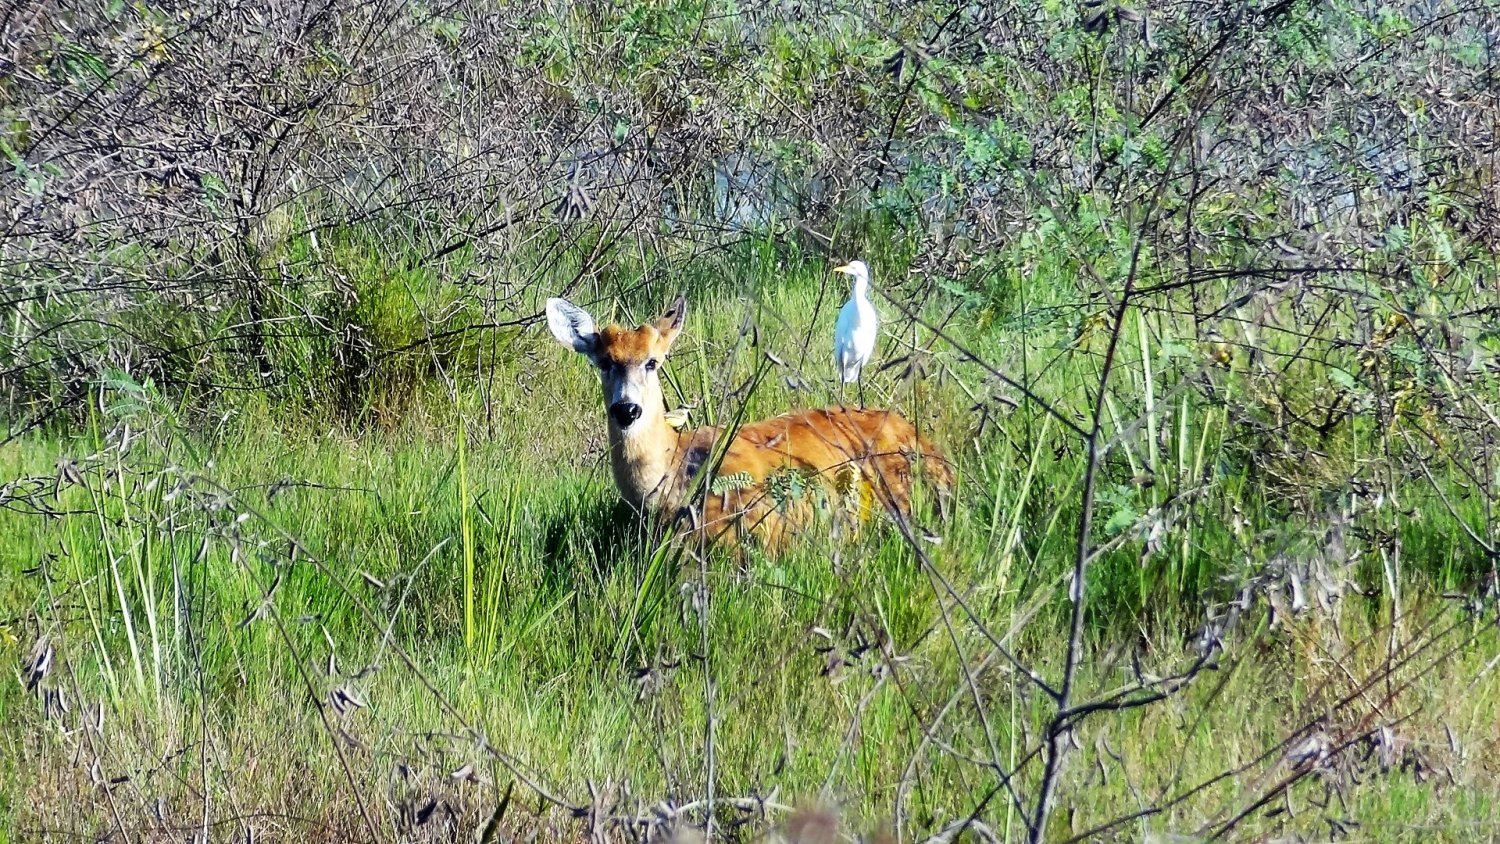 Pantanal deer